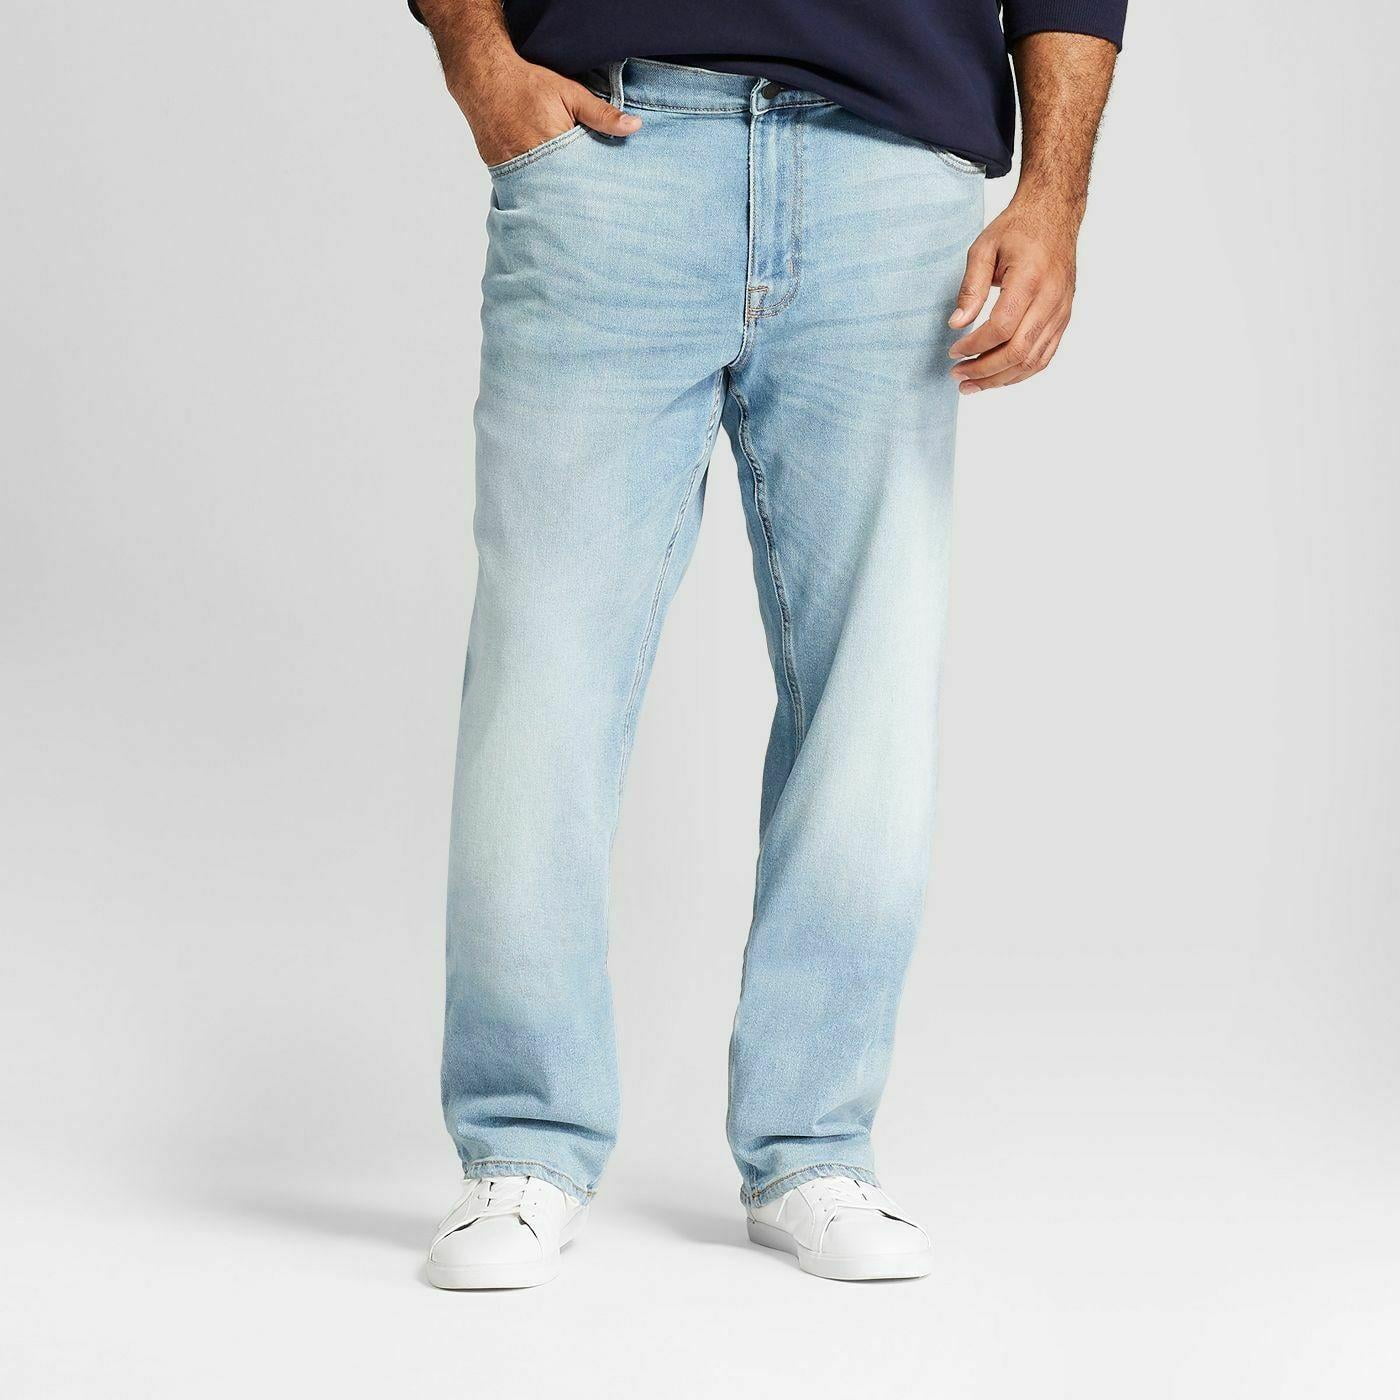 B208 Goodfellow Mens Slim Straight Stretch Jeans Denim sizes 36,38,44,46,48,50 